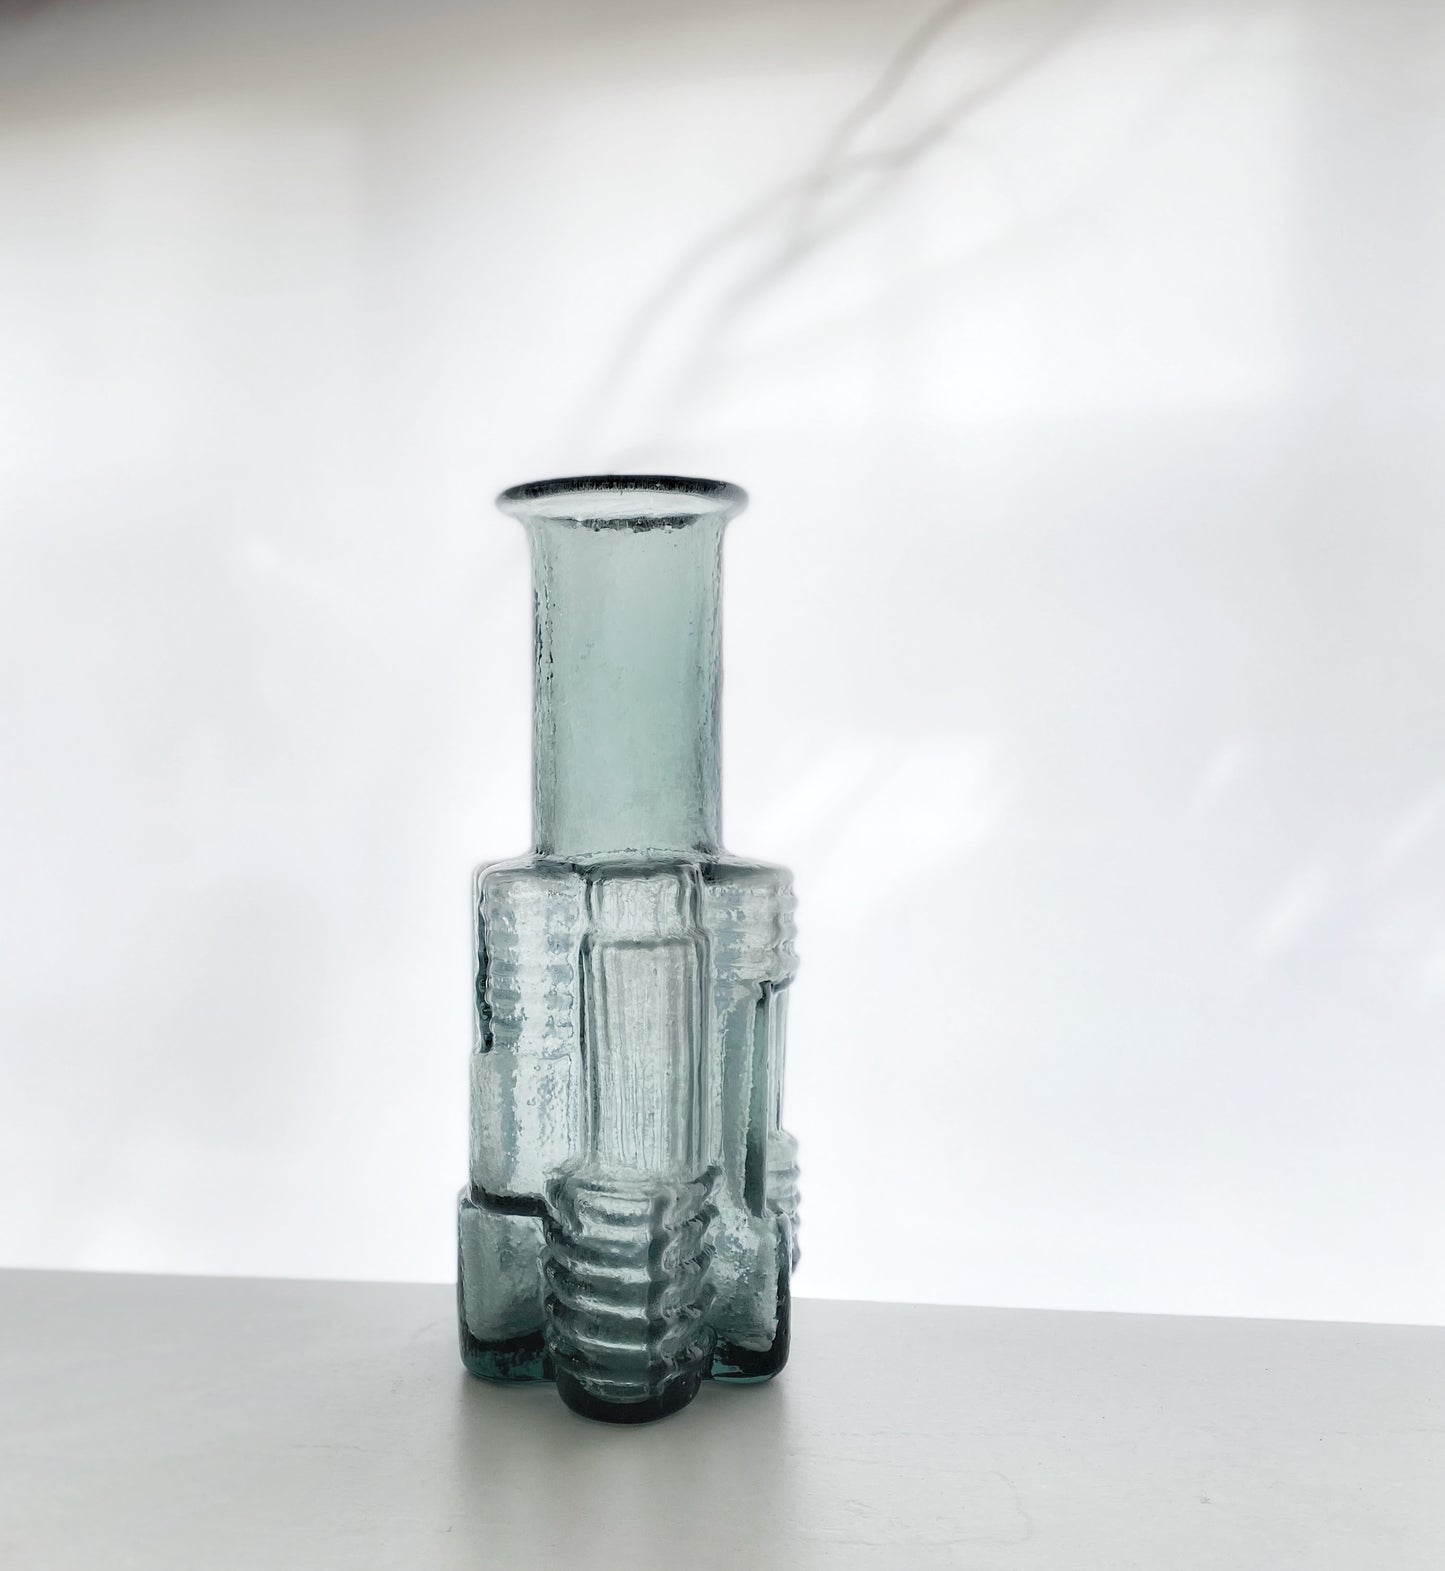 Per Olof Strom vase for Alsterfors Glasswork